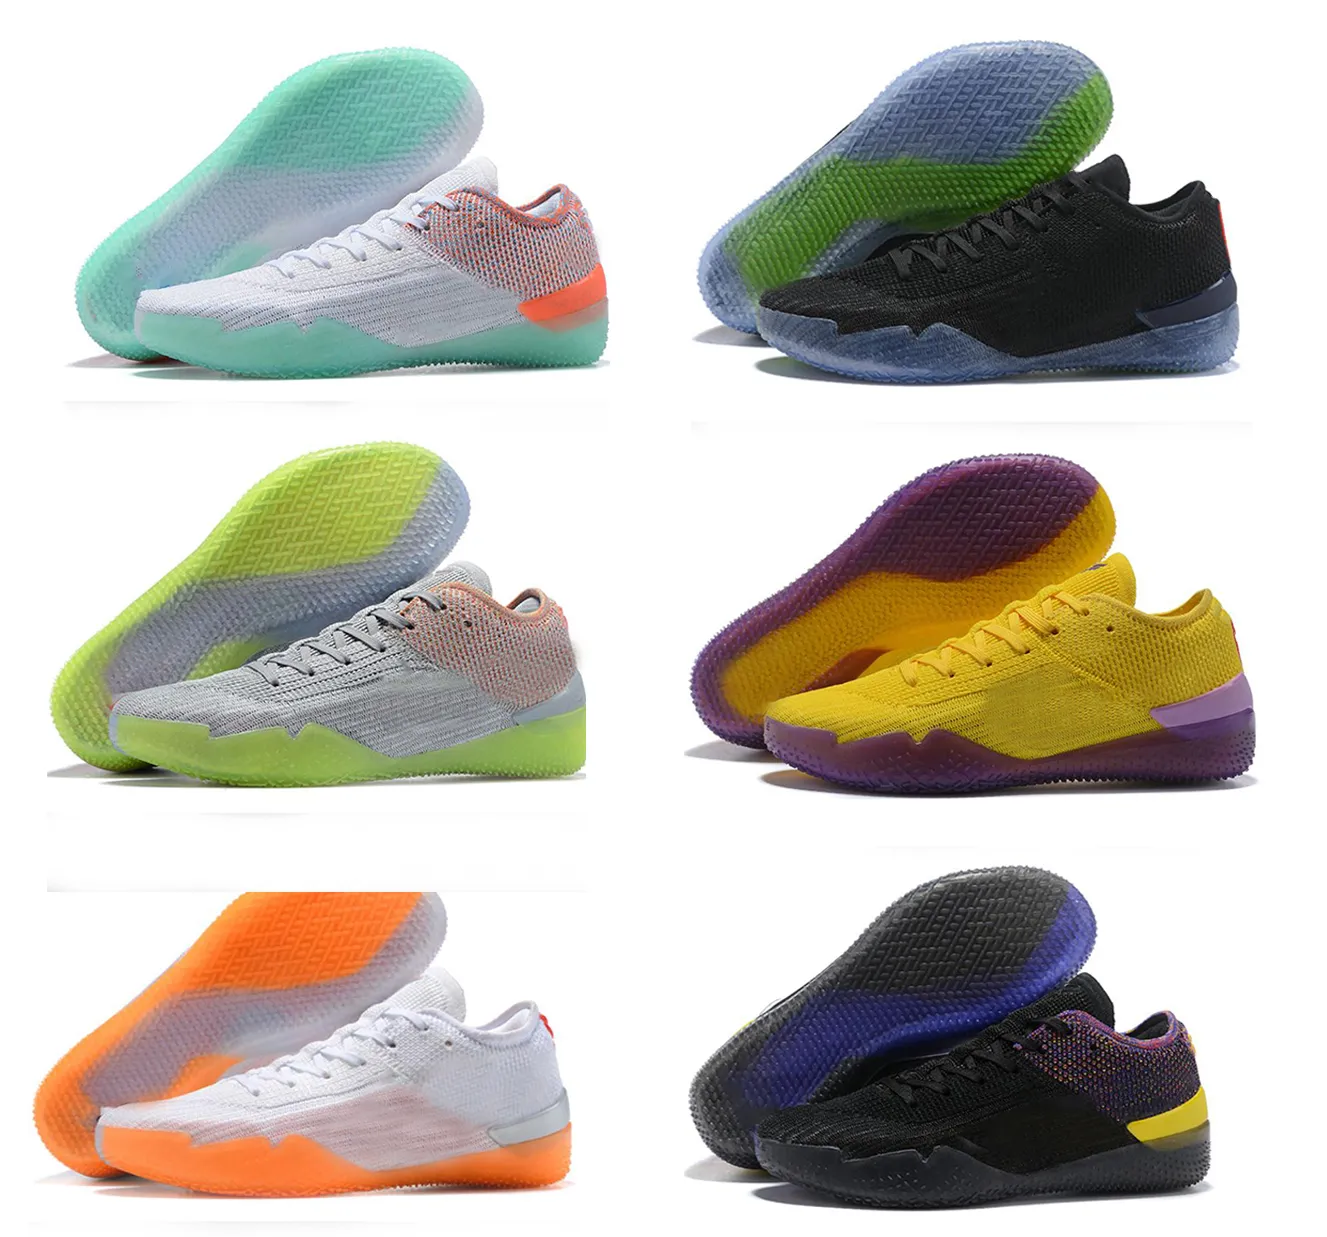 Ad Nxt 360 Sneakers Scarpe da basket Sport Uomo Sneakers in vendita AD Leggero Agility Mamba Mentality Scarpe da basket yakuda Allenamento locale dhgate Sconto